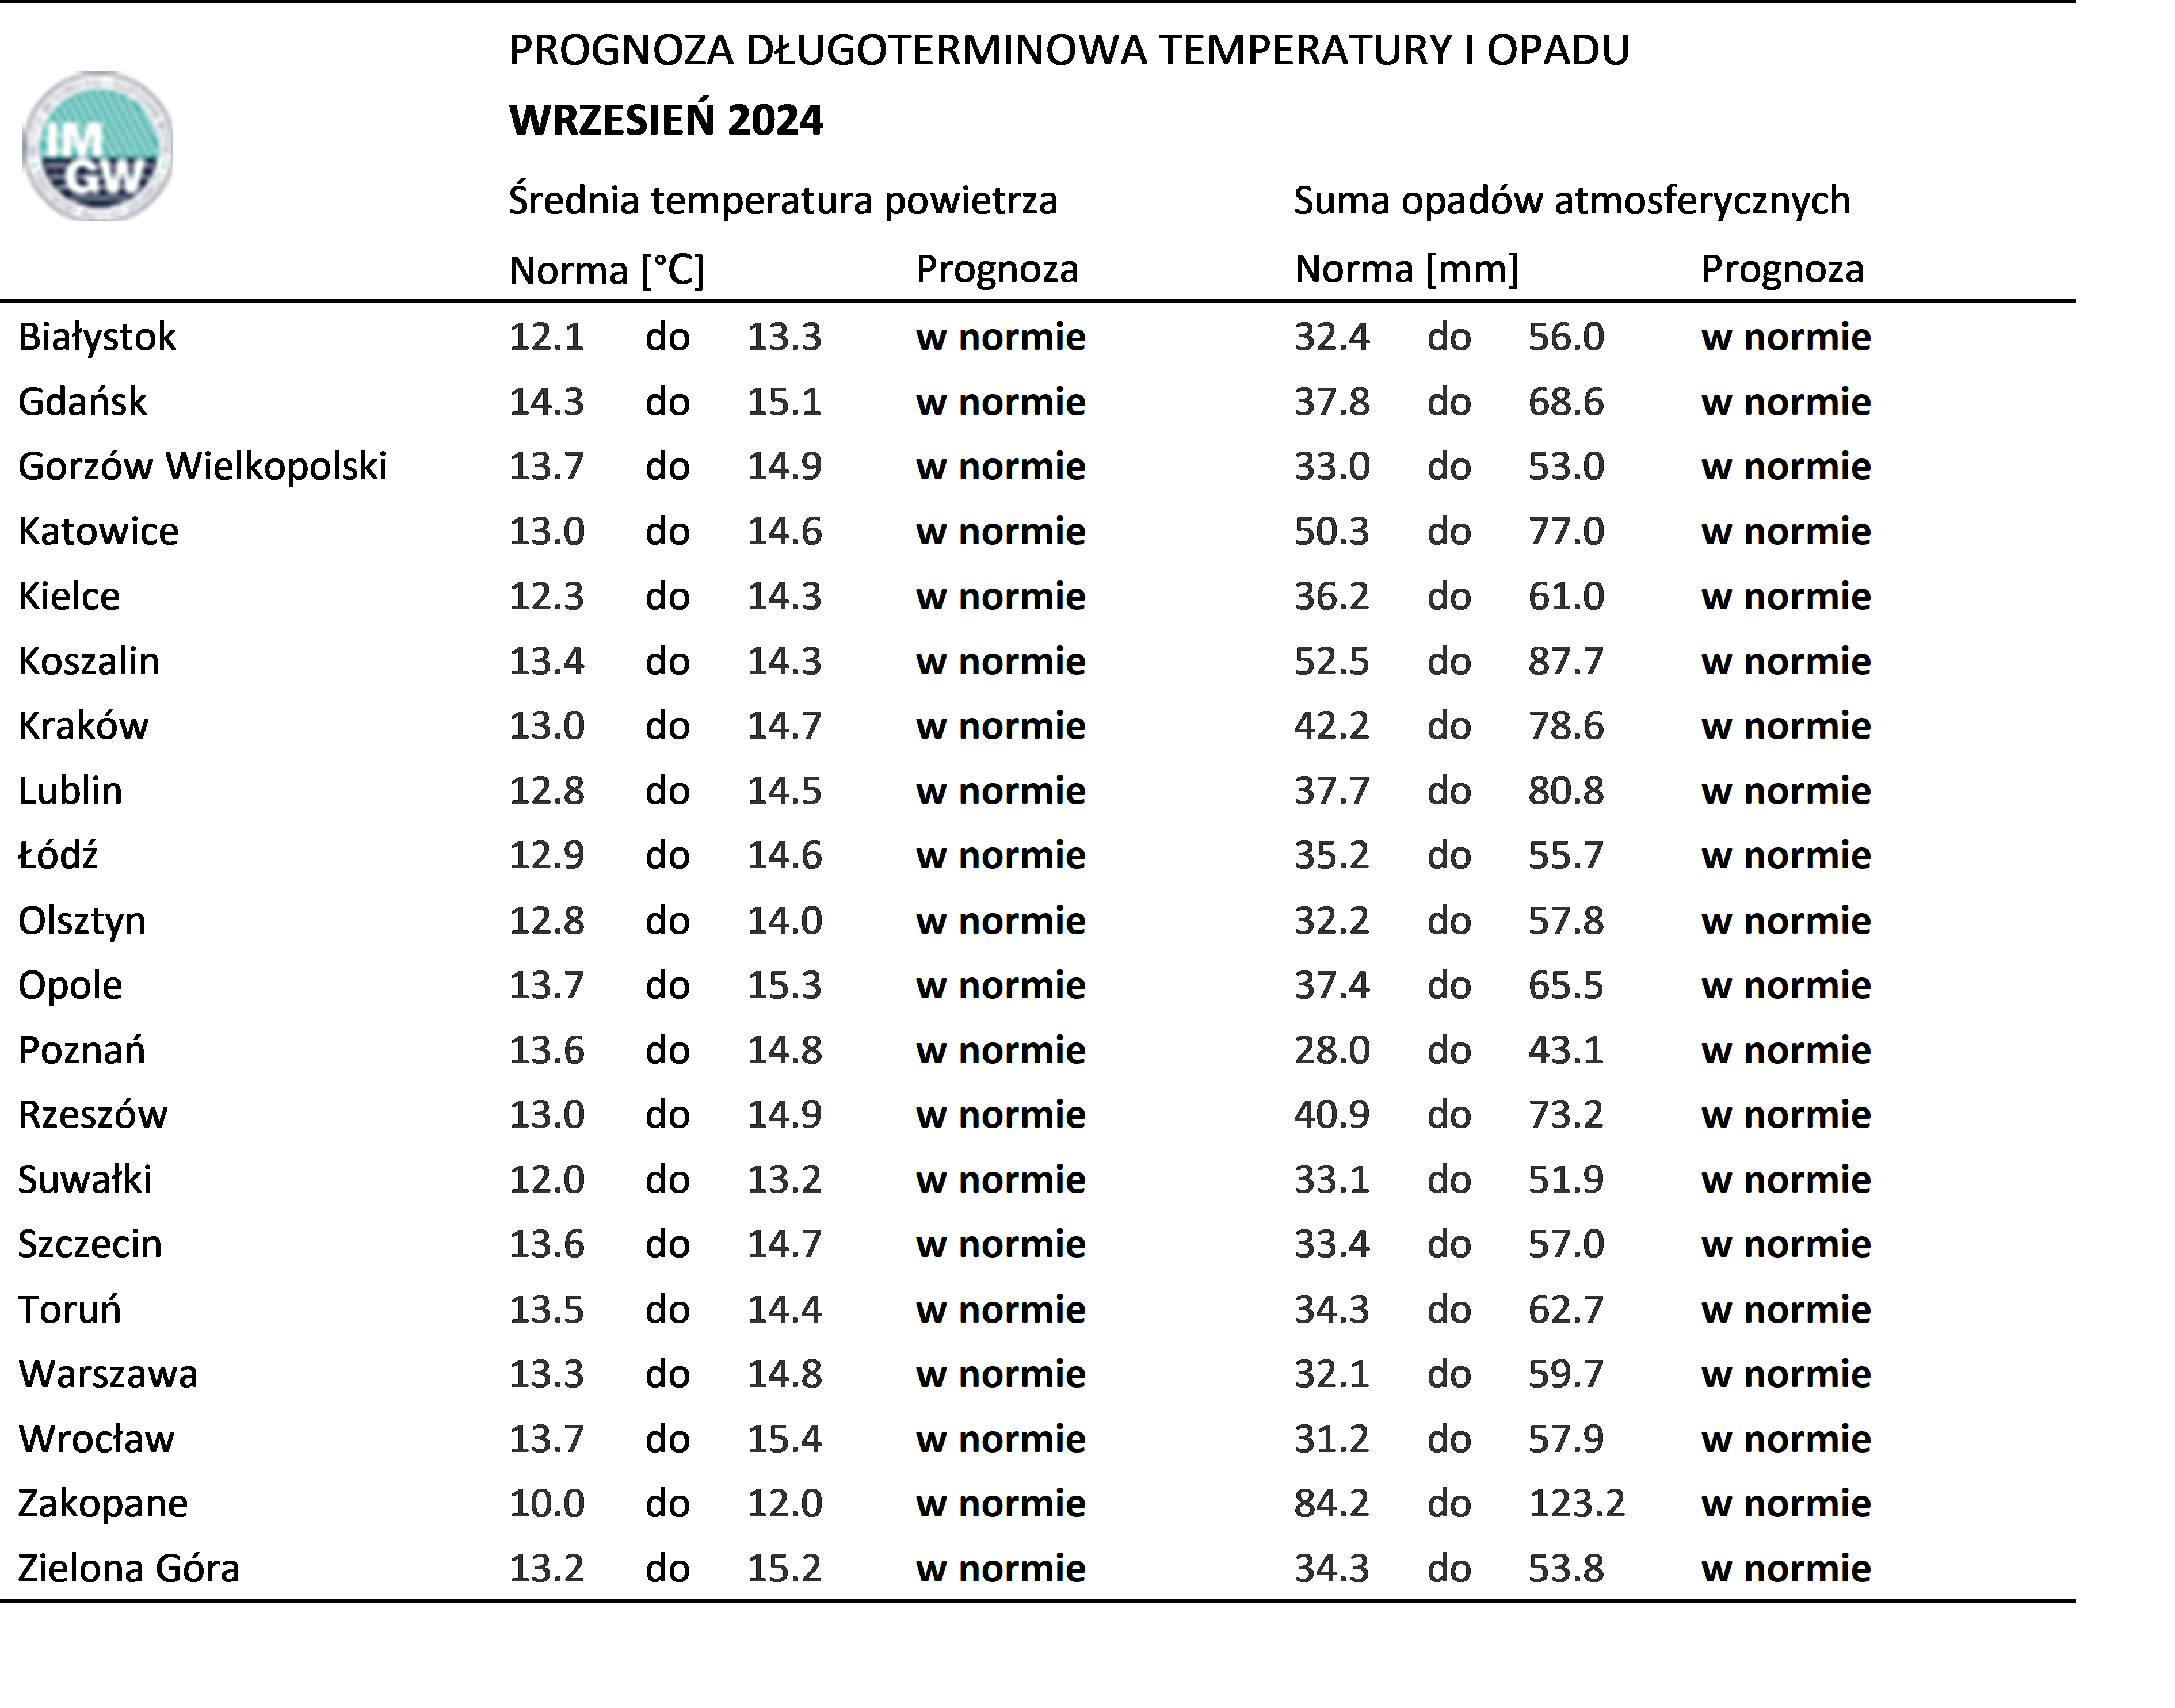 Tab. 4. Norma średniej temperatury powietrza i sumy opadów atmosferycznych dla września z lat 1991-2020 dla wybranych miast w Polsce wraz z prognozą na wrzesień 2024 r.